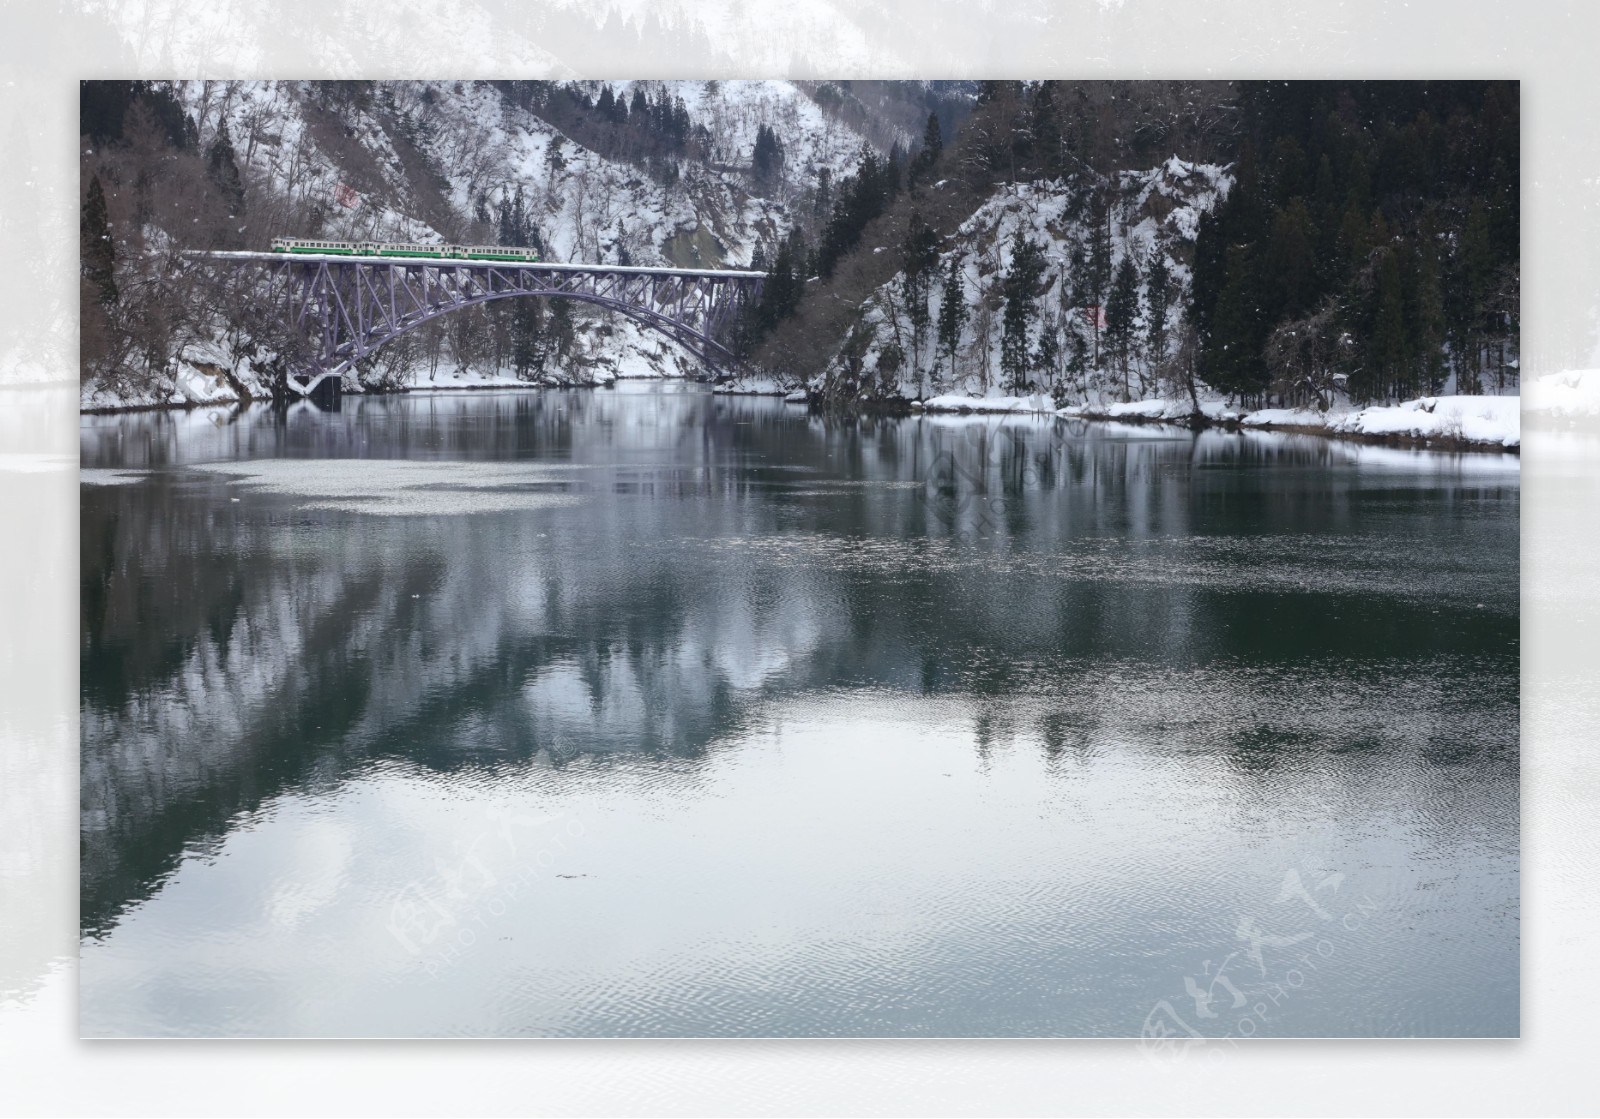 雪景铁道桥图片